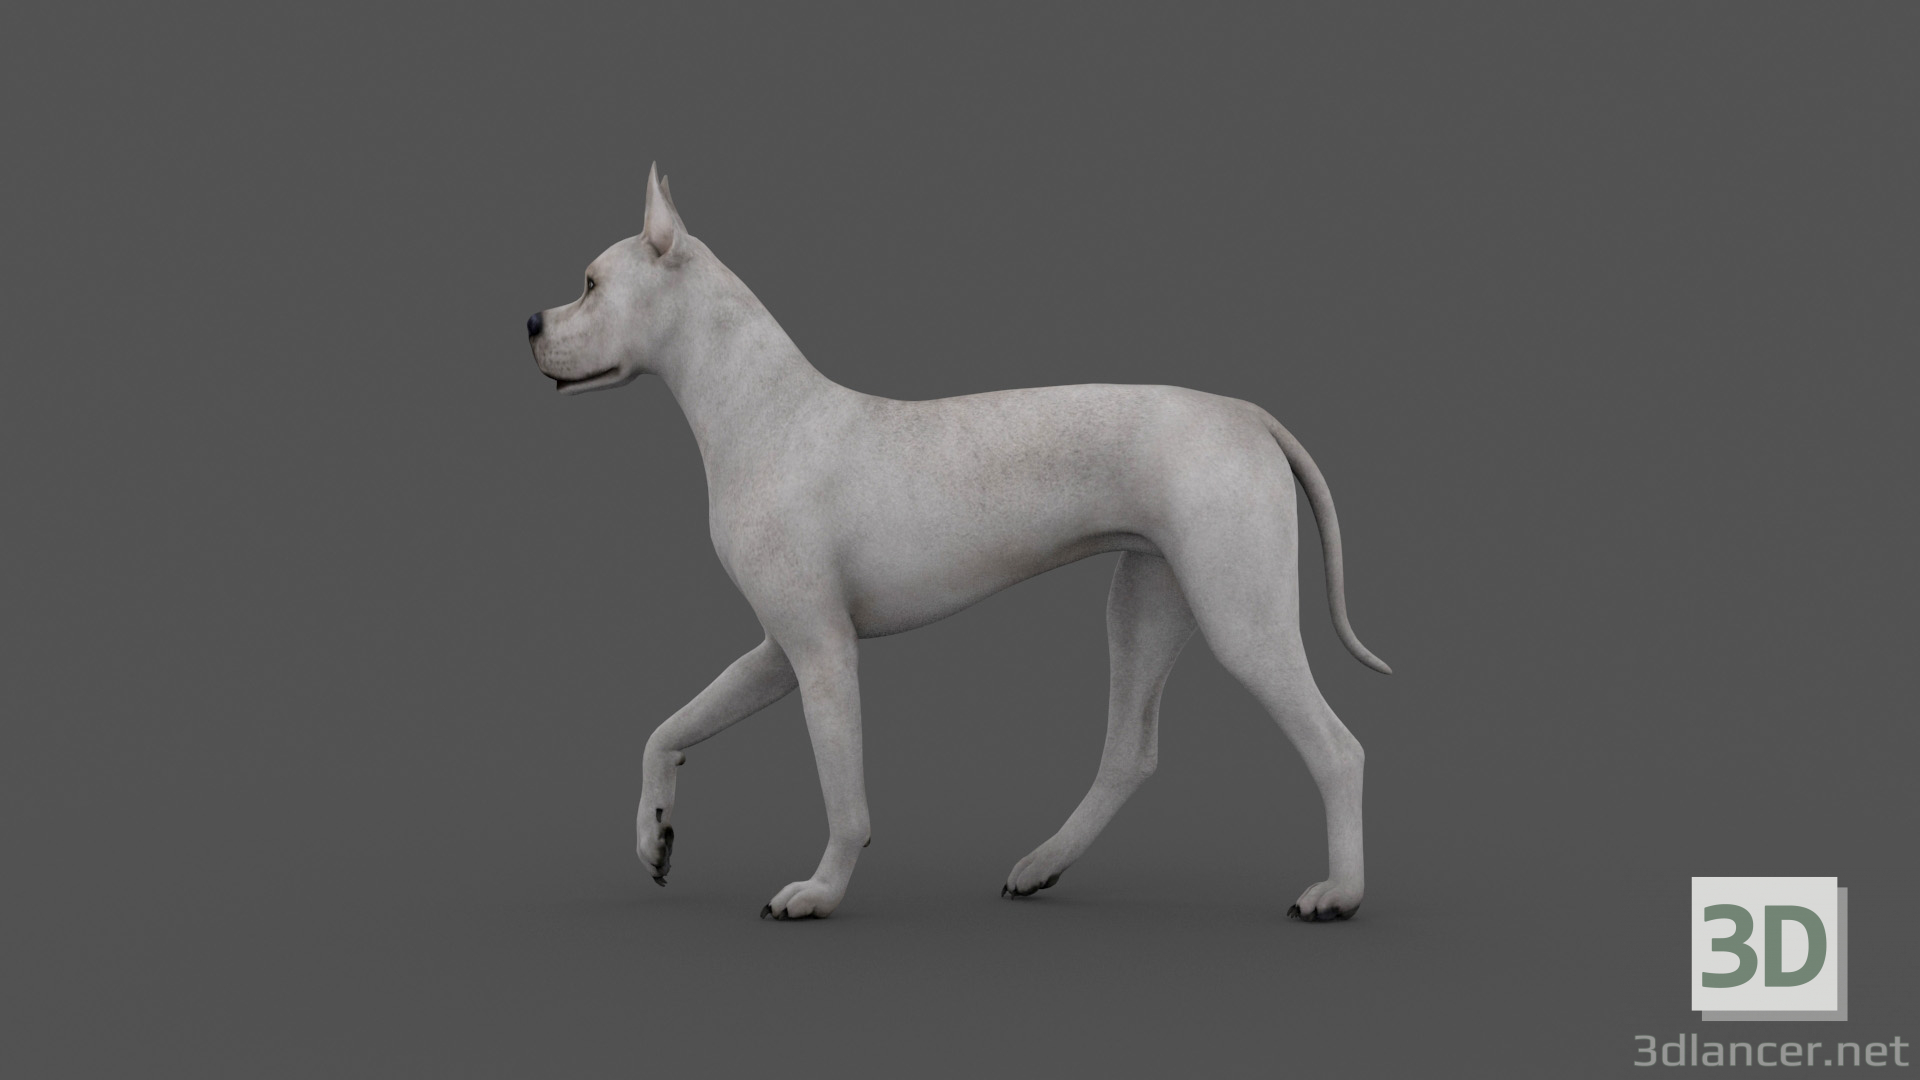 3D FDGD-001 Animasyon köpeği modeli satın - render